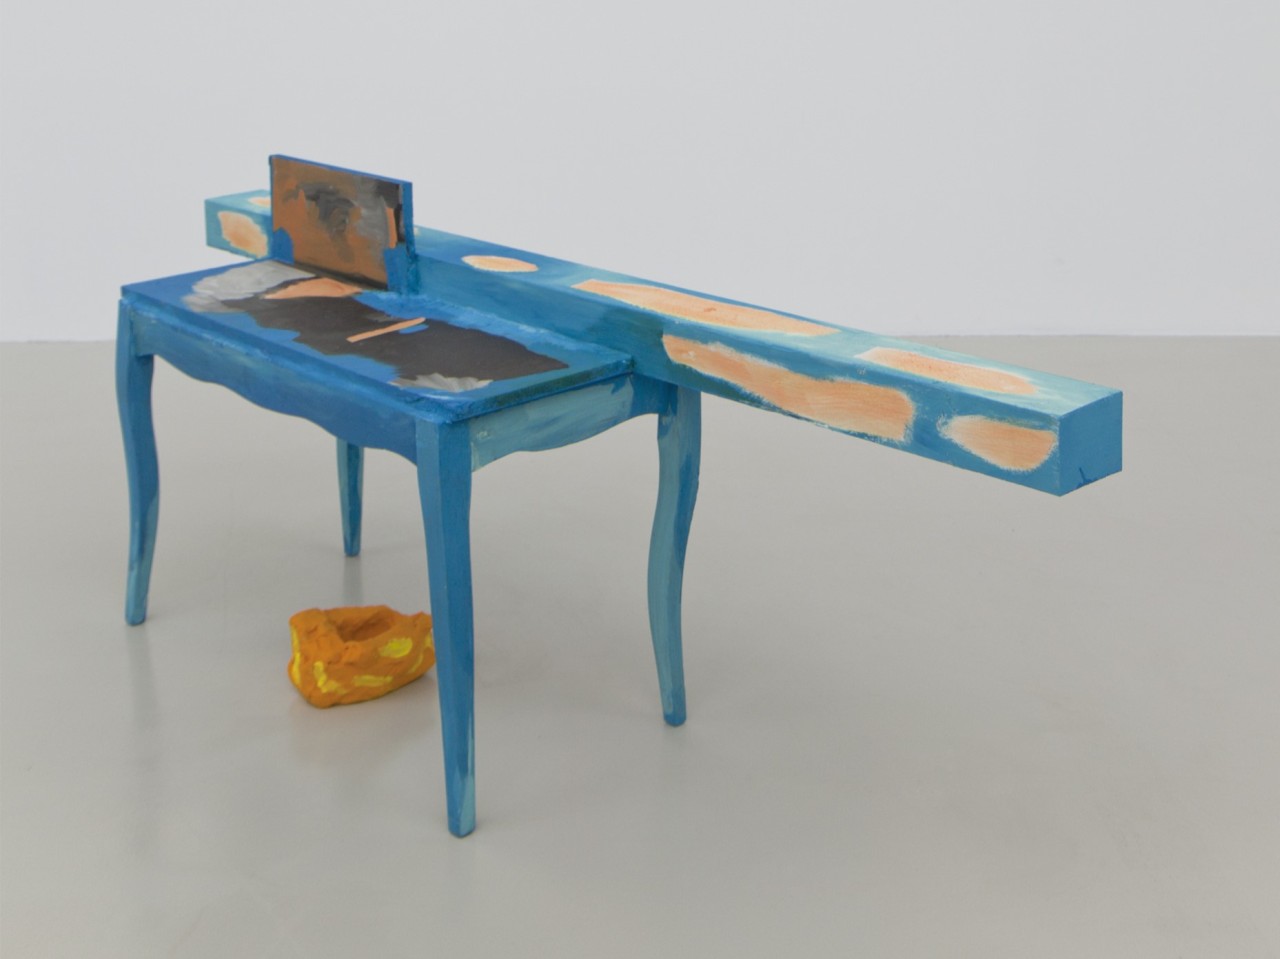 L'oeuvre est une installation composée d'un banc en bois auquel est accroché une planche. Le tout est grossièrement peint en bleu.